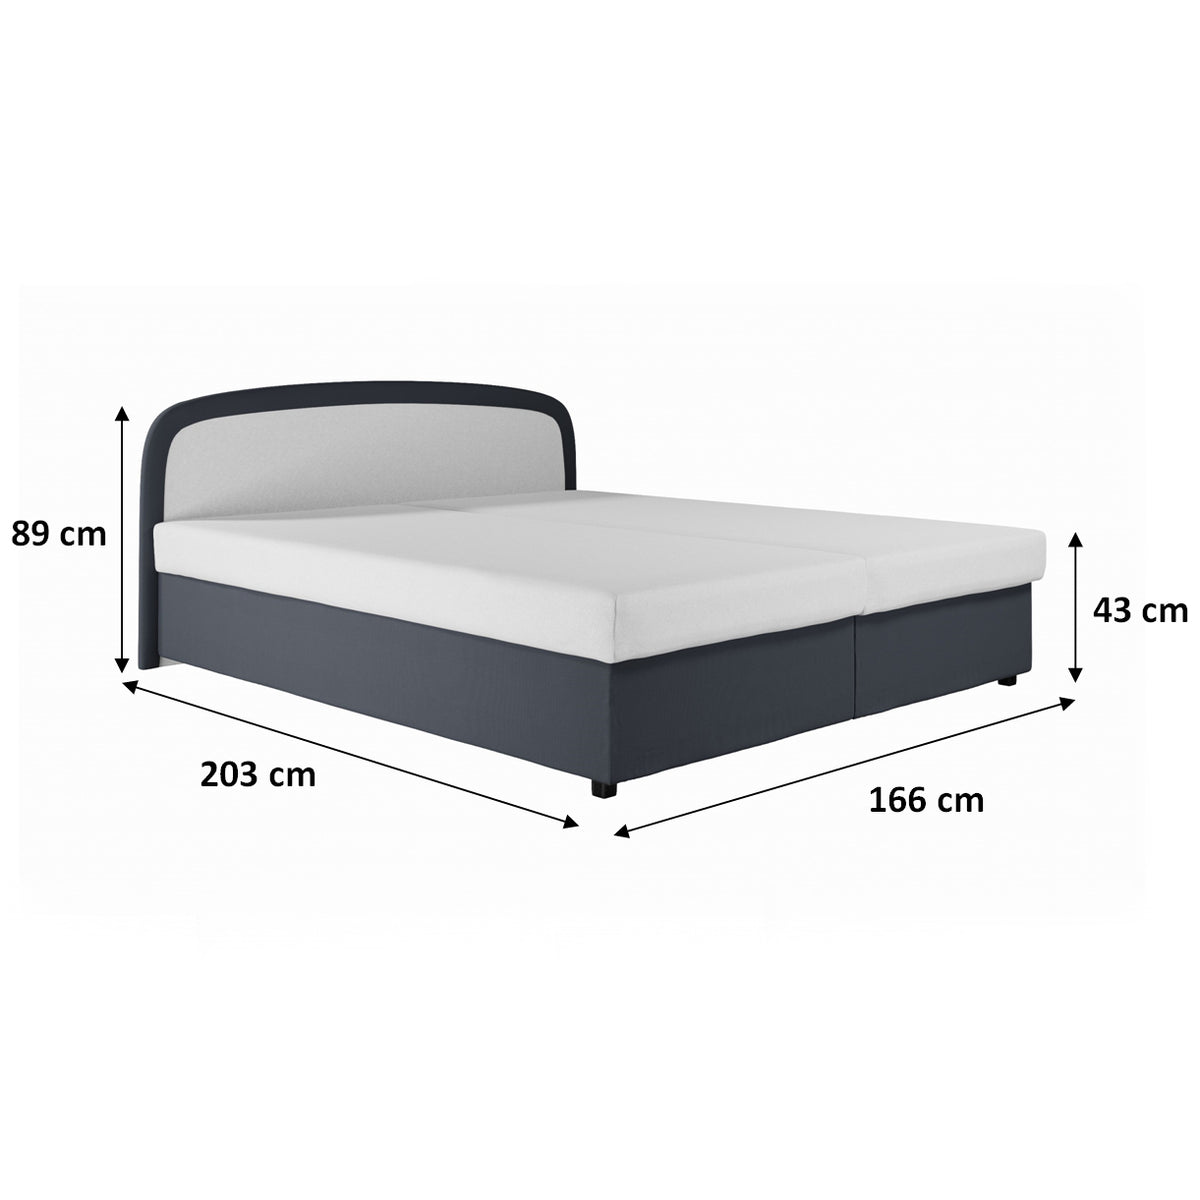 Čalouněná postel Zofie 160x200, šedá, včetně matrace